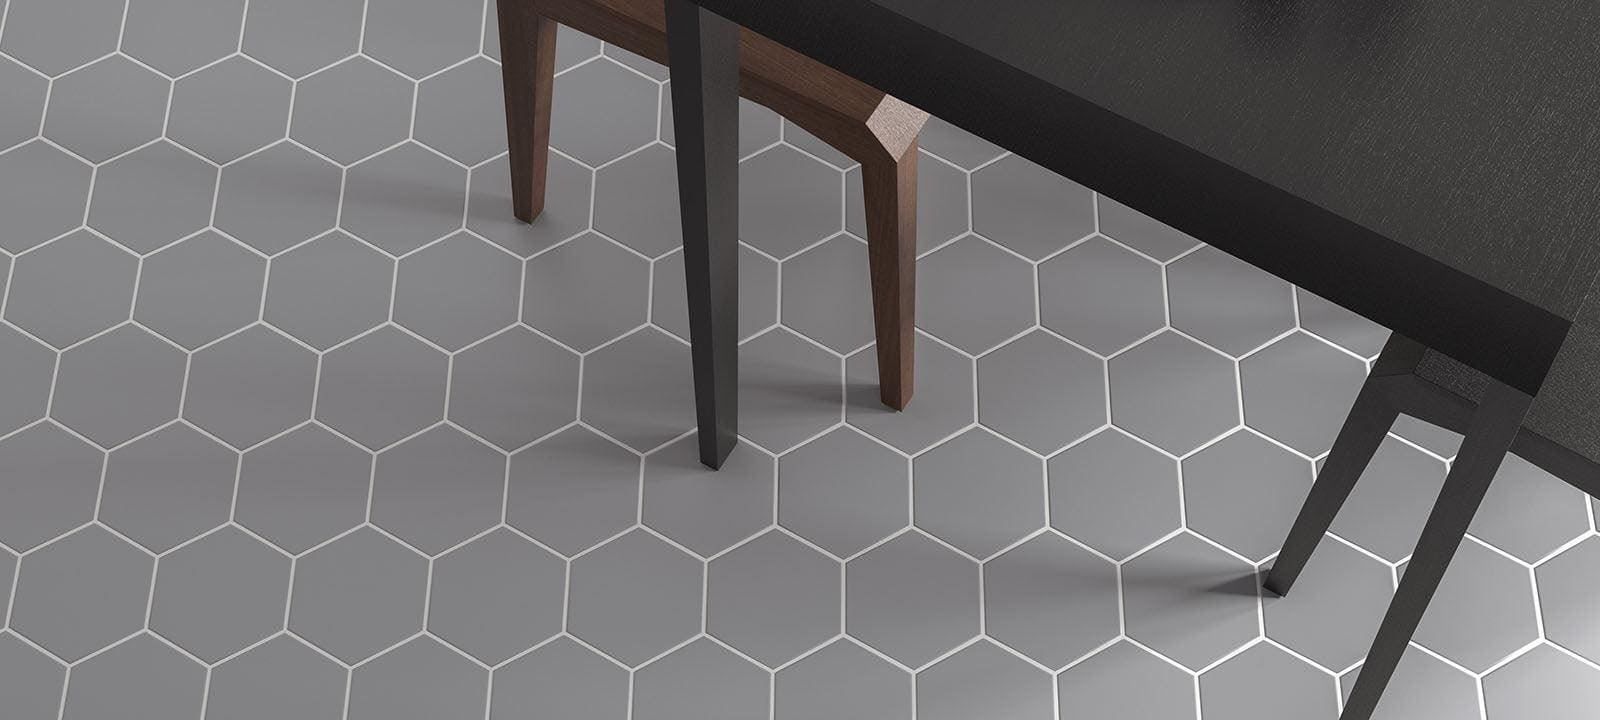 Timeless Hexagon Grey Matt - Hyperion Tiles